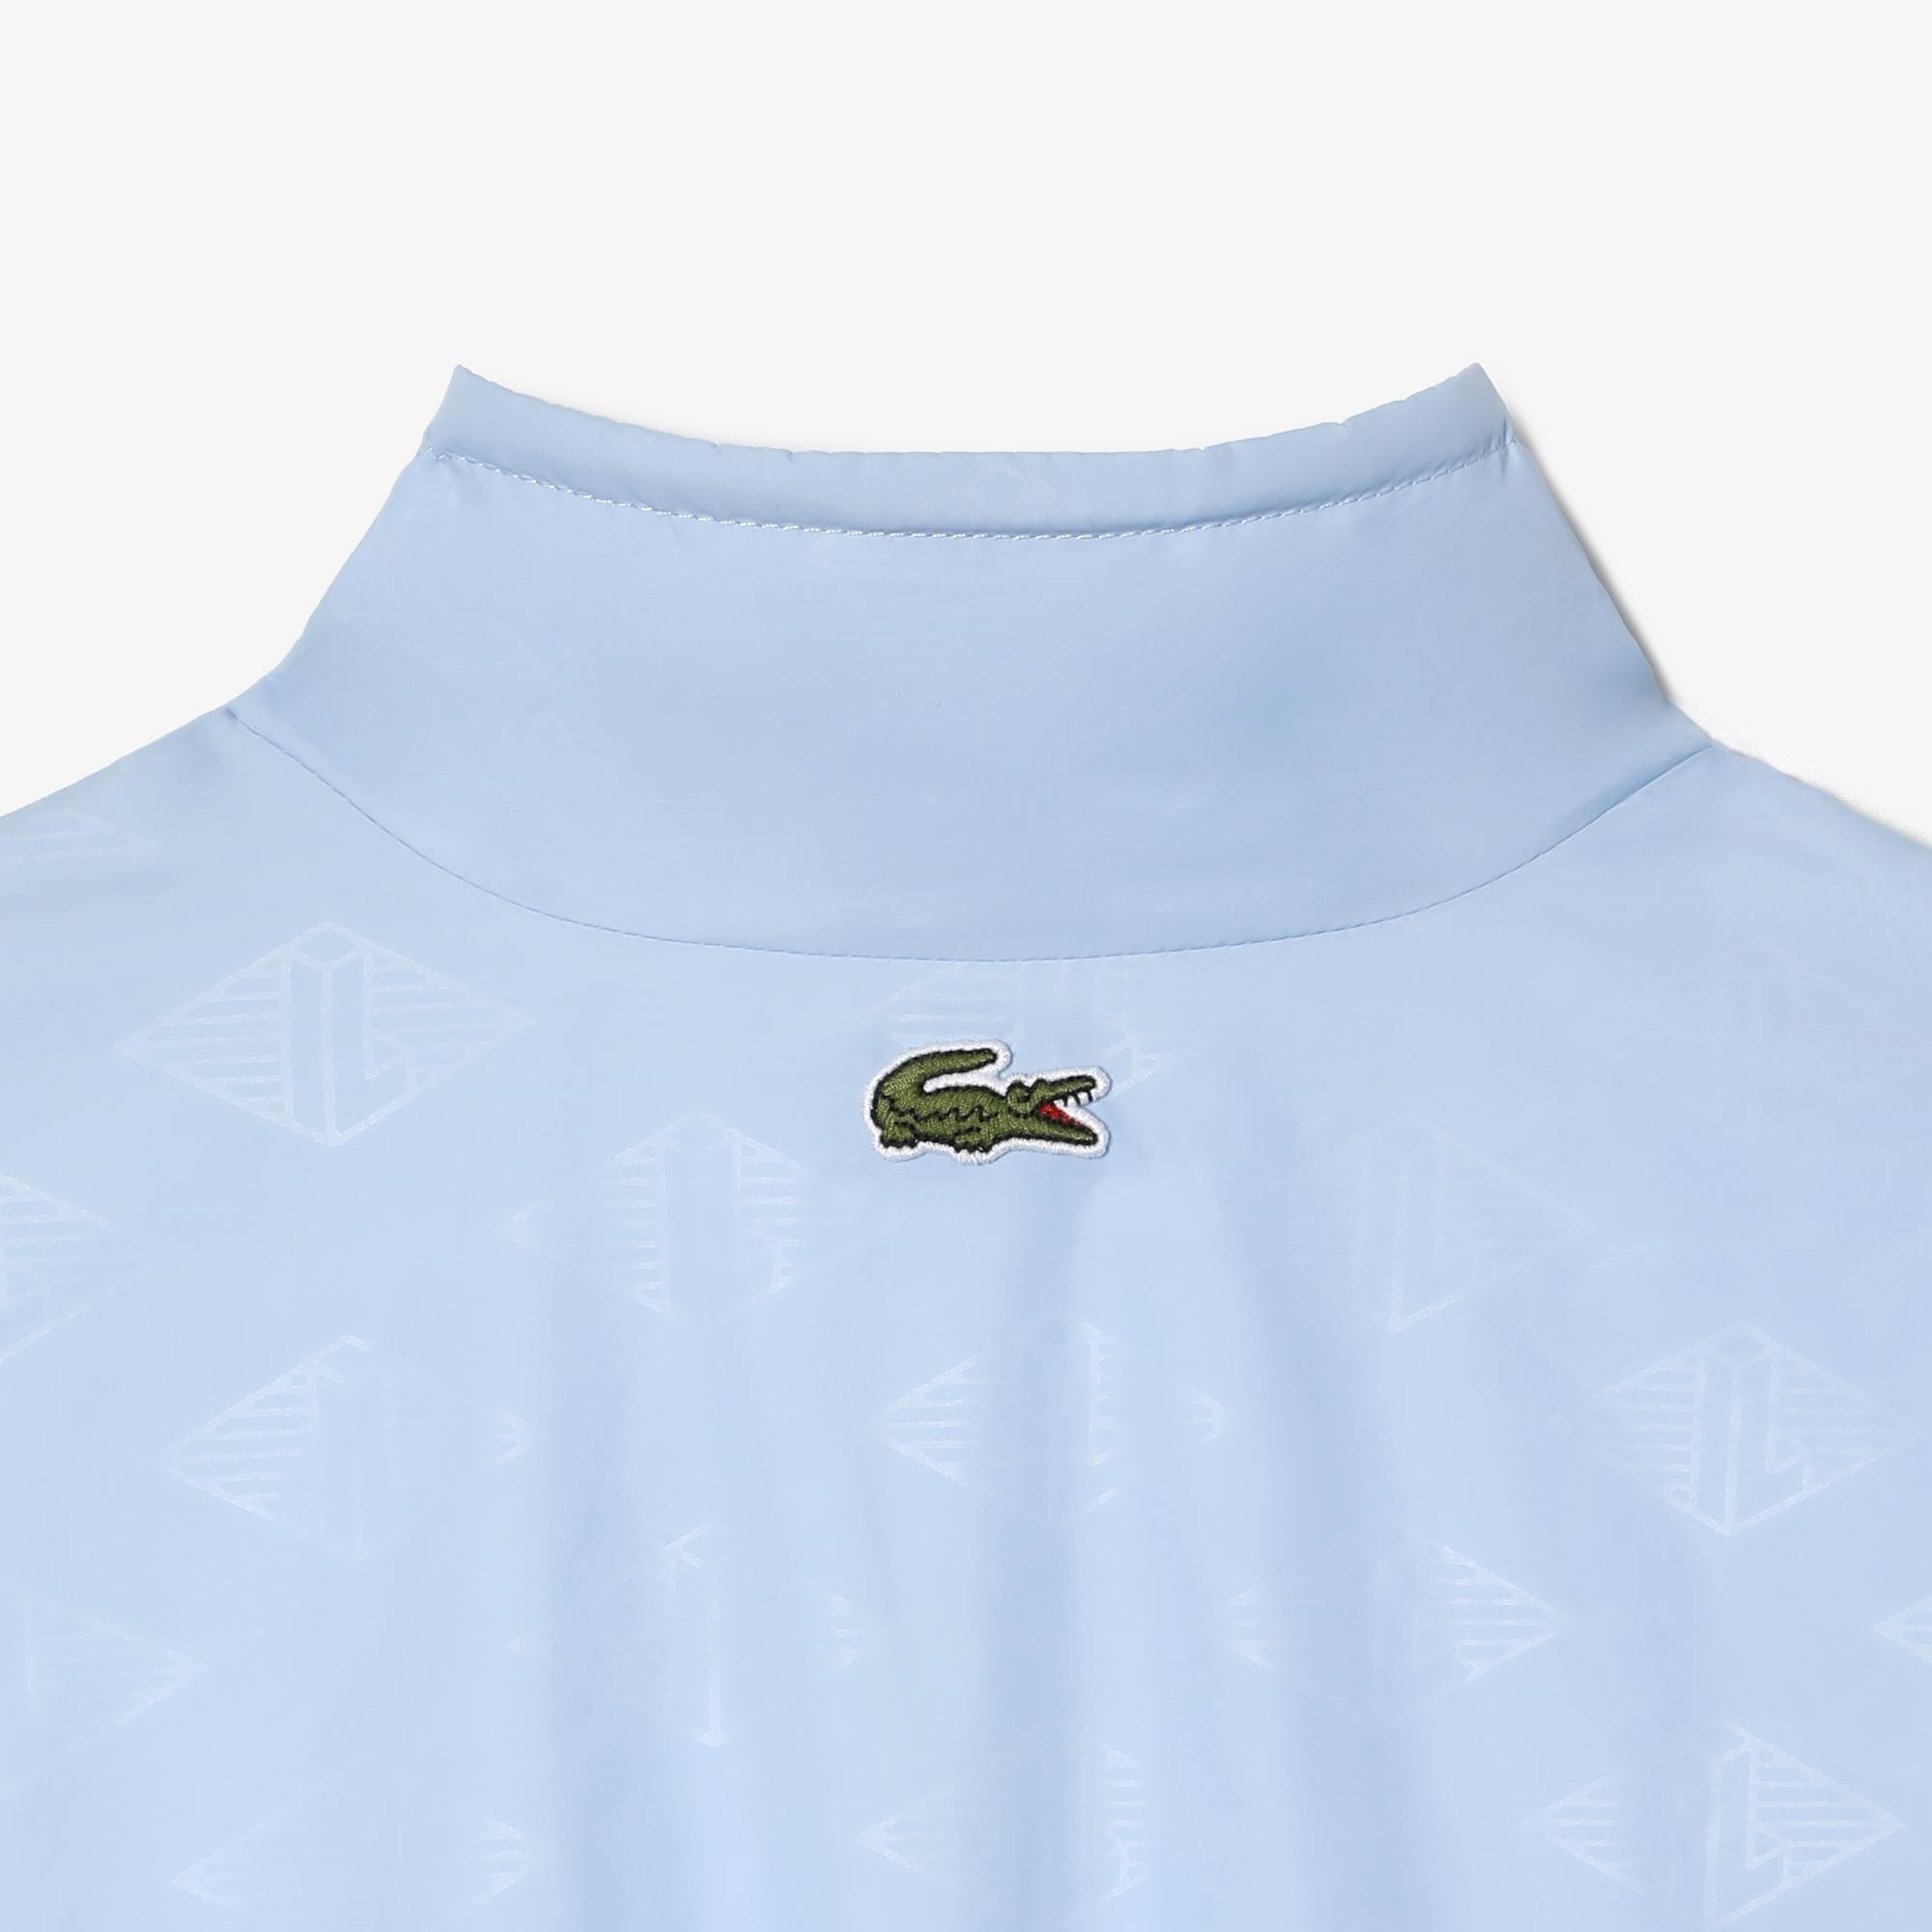 Lacoste damska bluza sportowa z nadrukiem monogramu